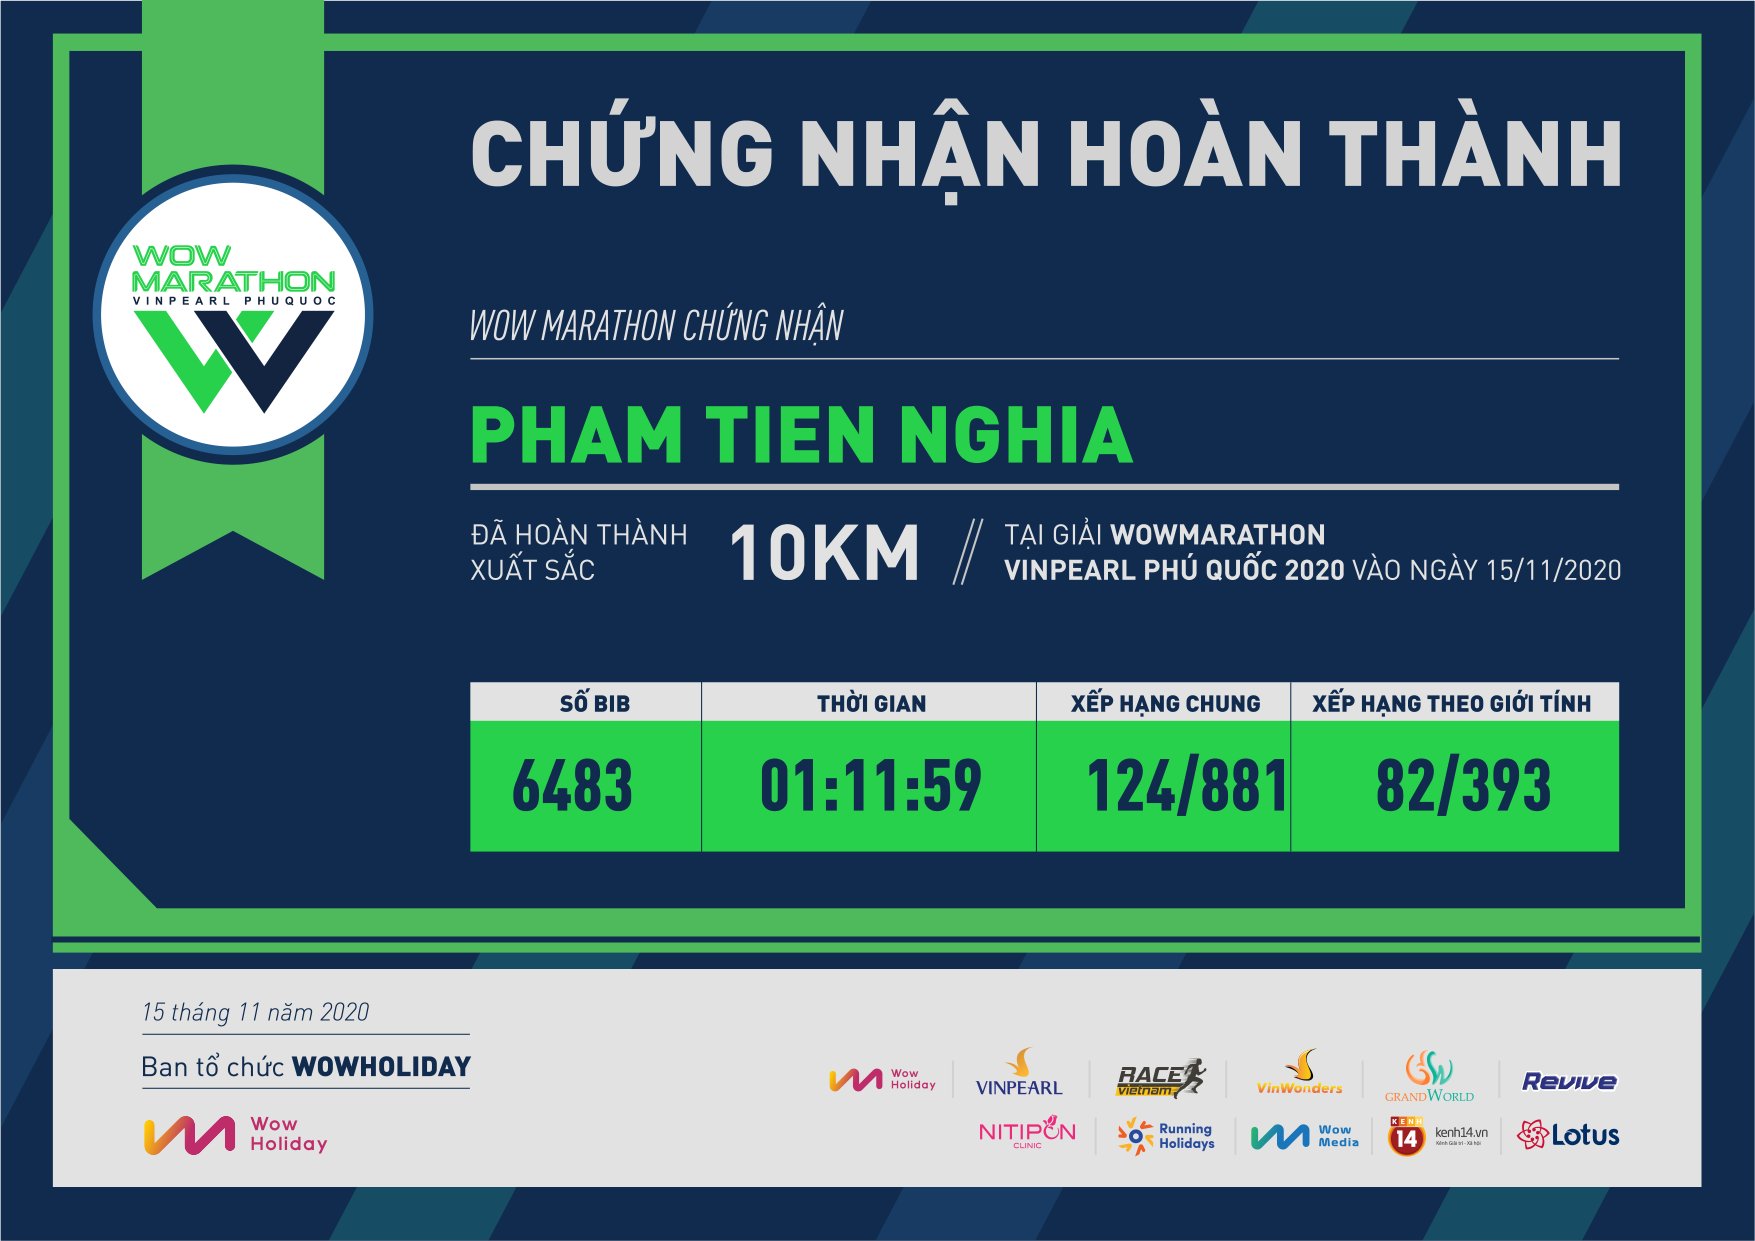 6483 - Pham Tien Nghia